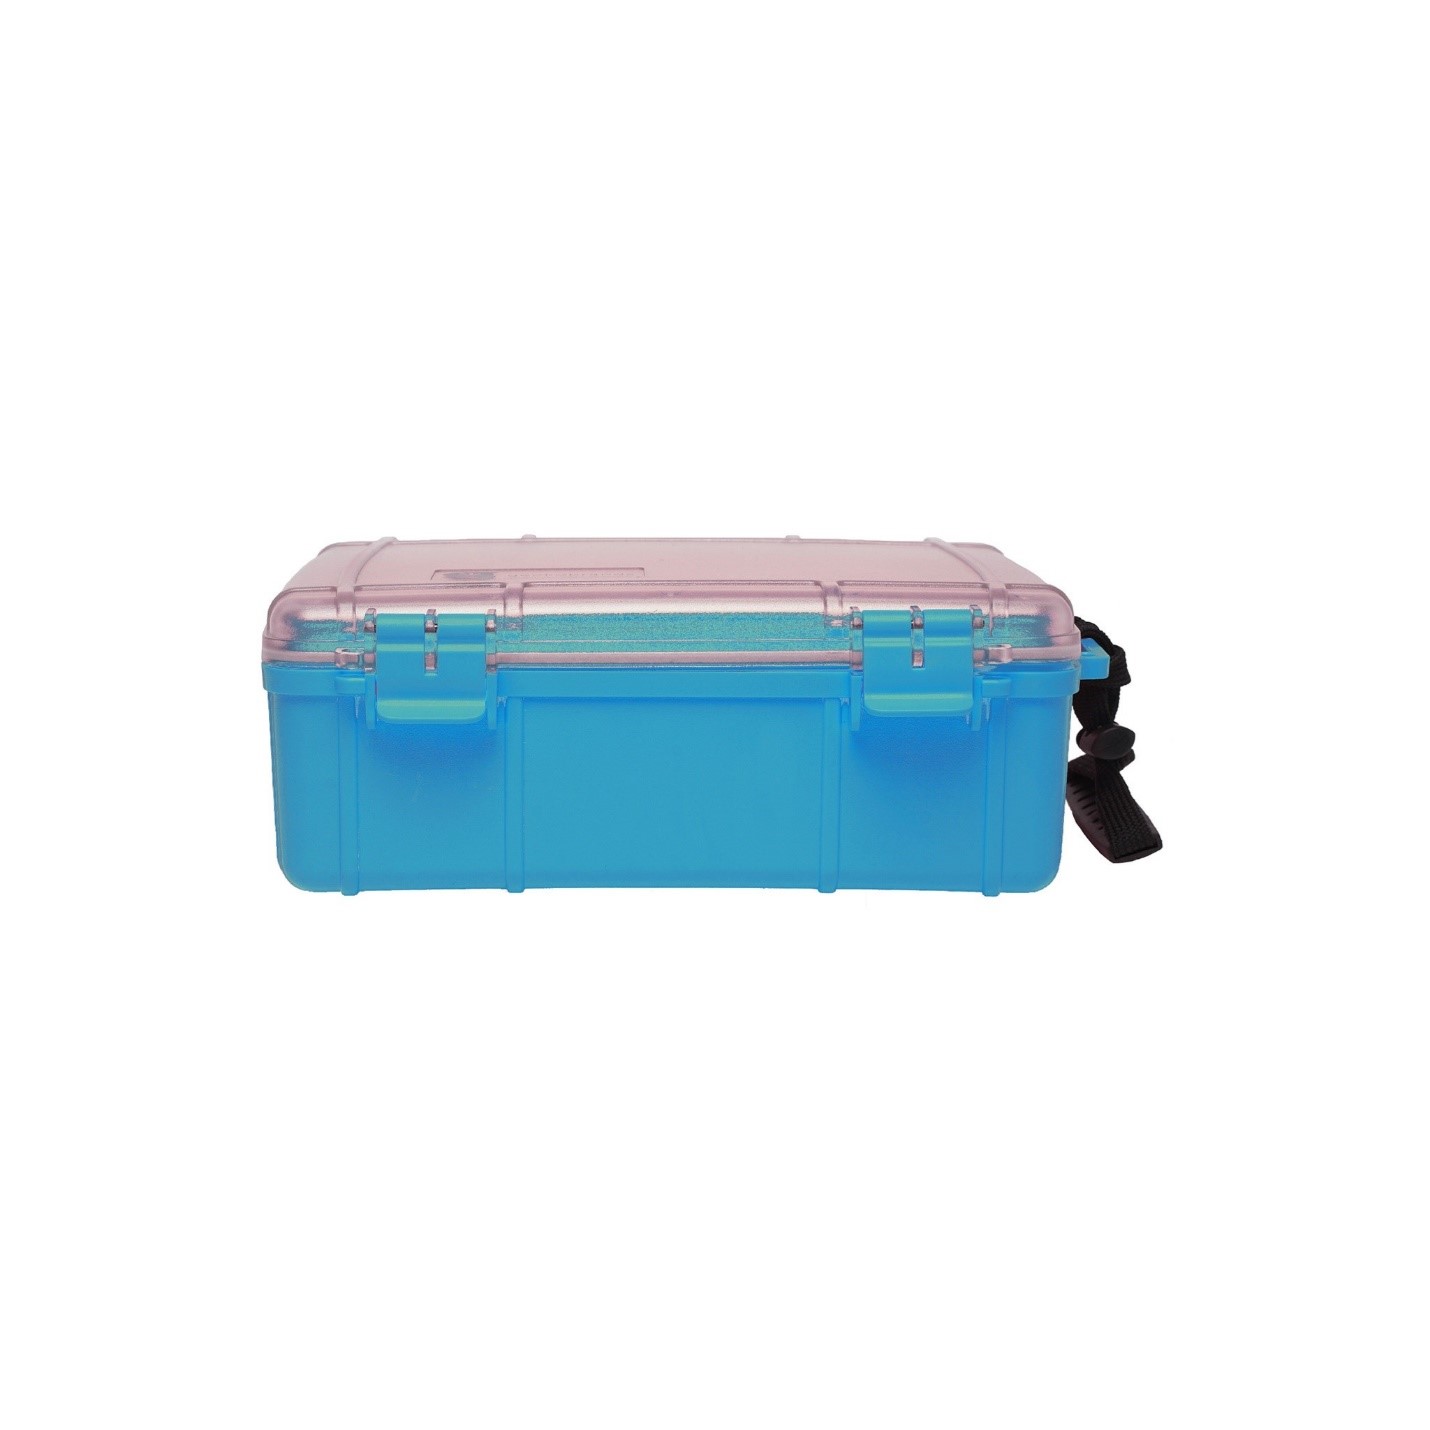 Waterproof Dry Boxes